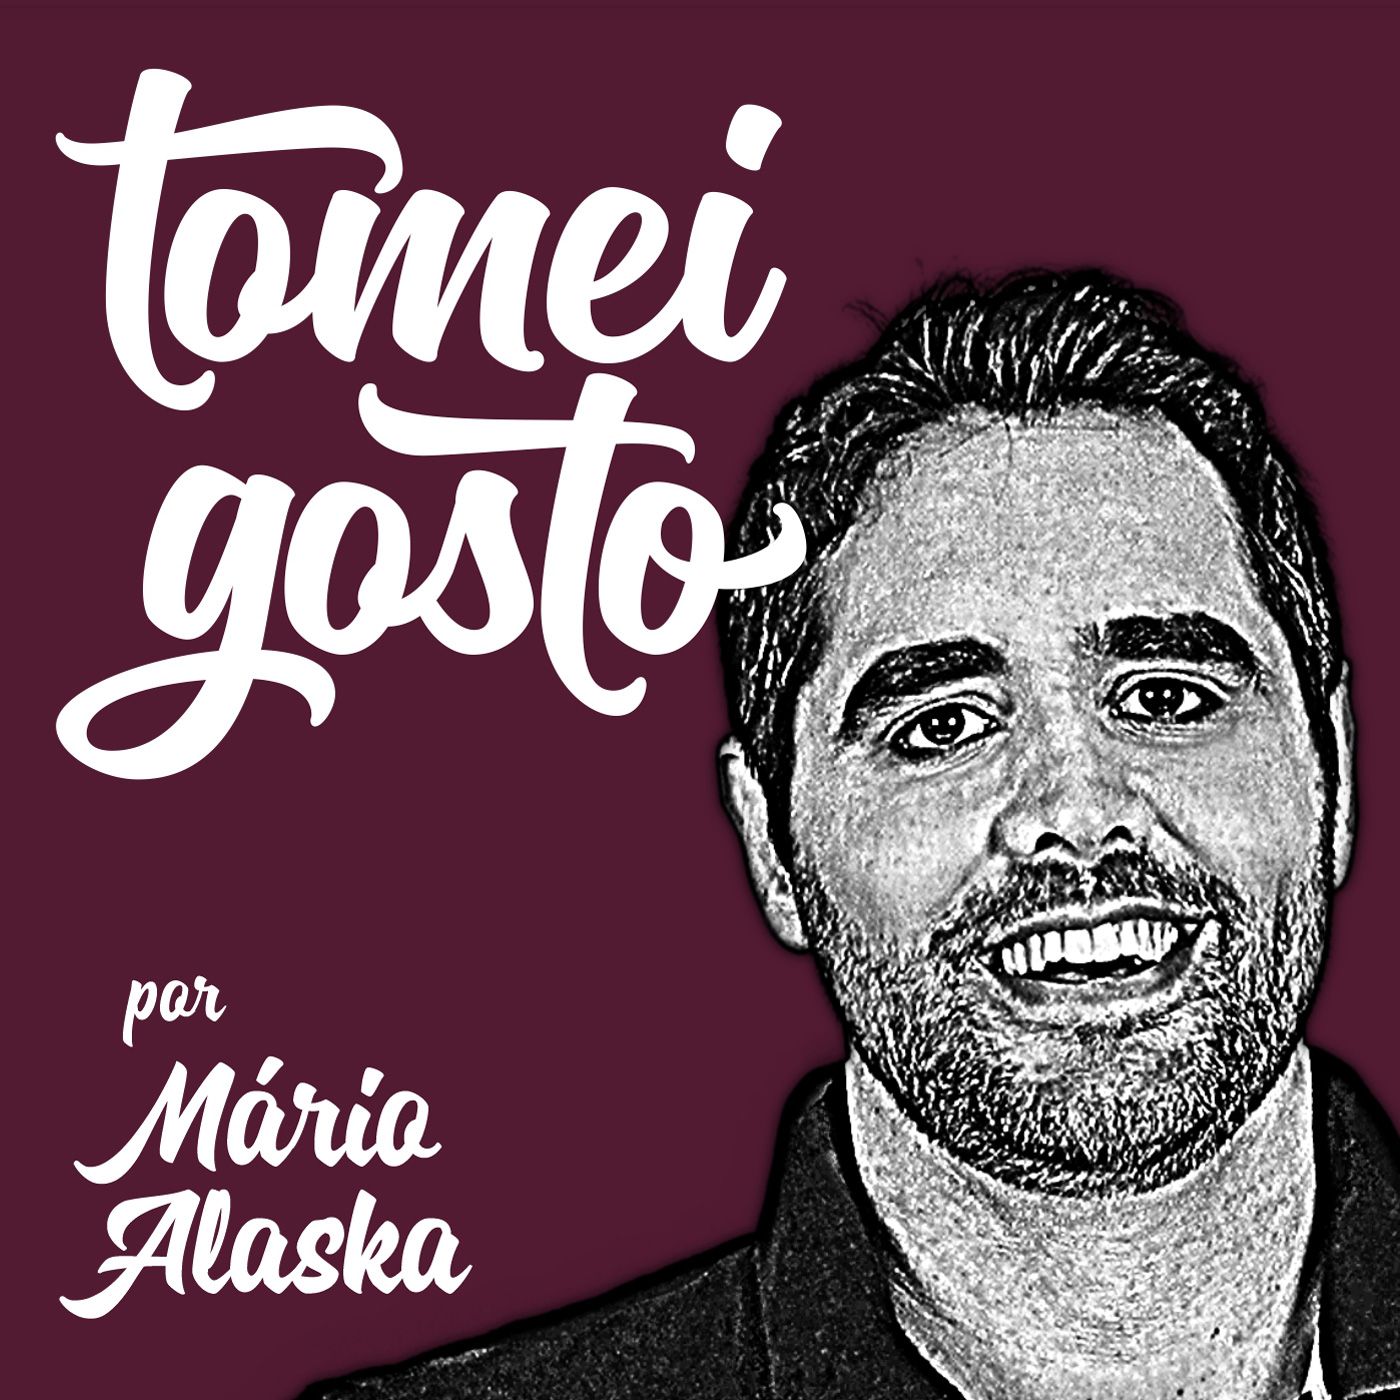 TOMEI GOSTO - Sergio Sette Camara